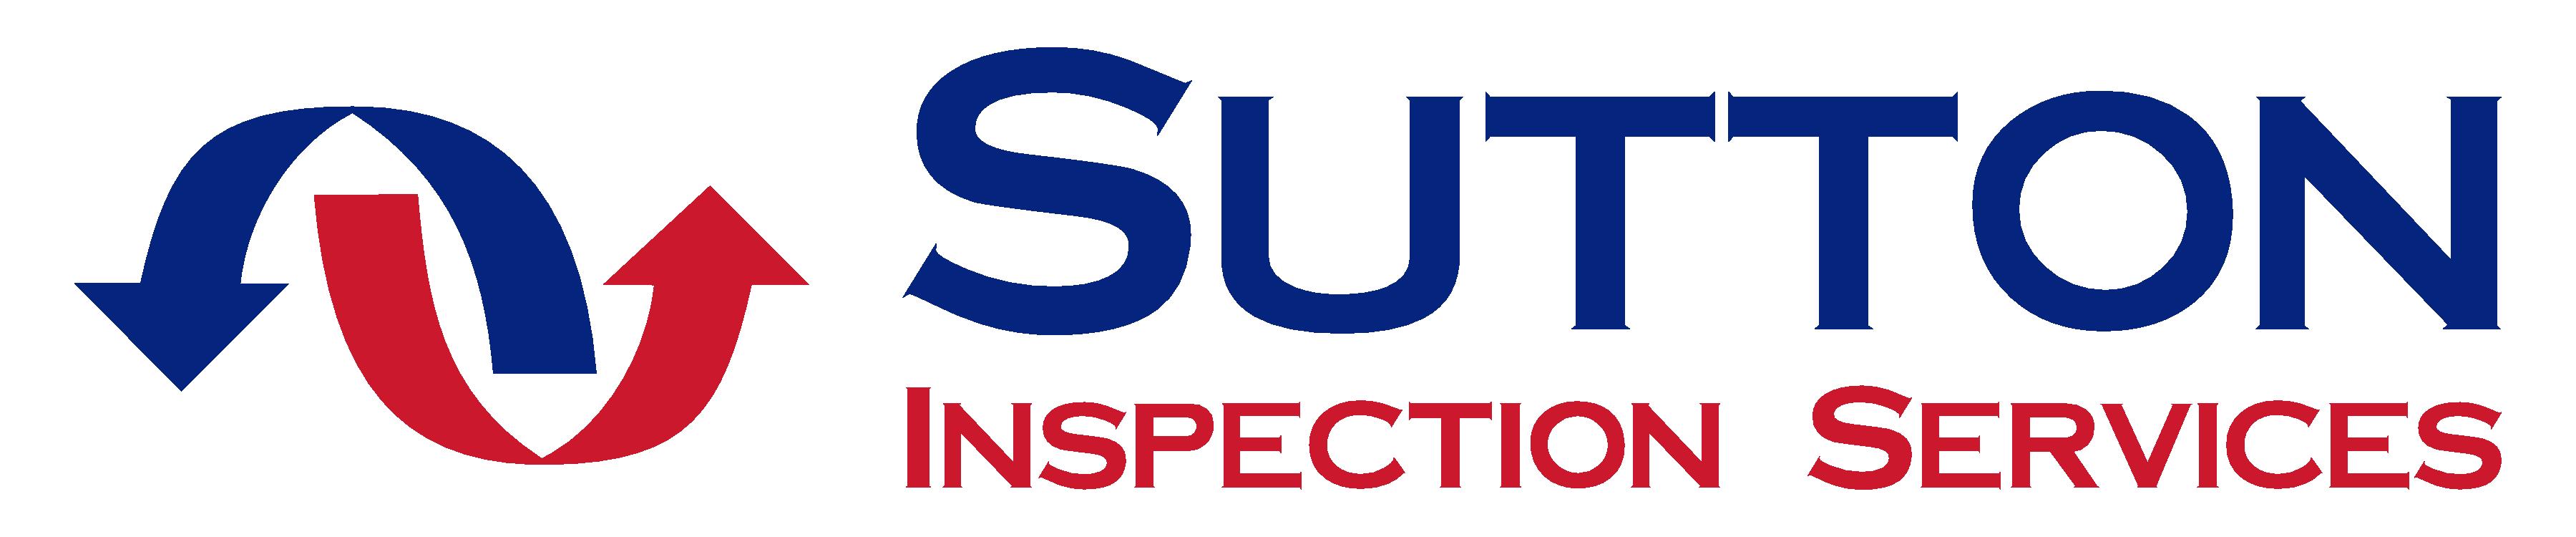 R. G. Sutton Inspection Services Inc.